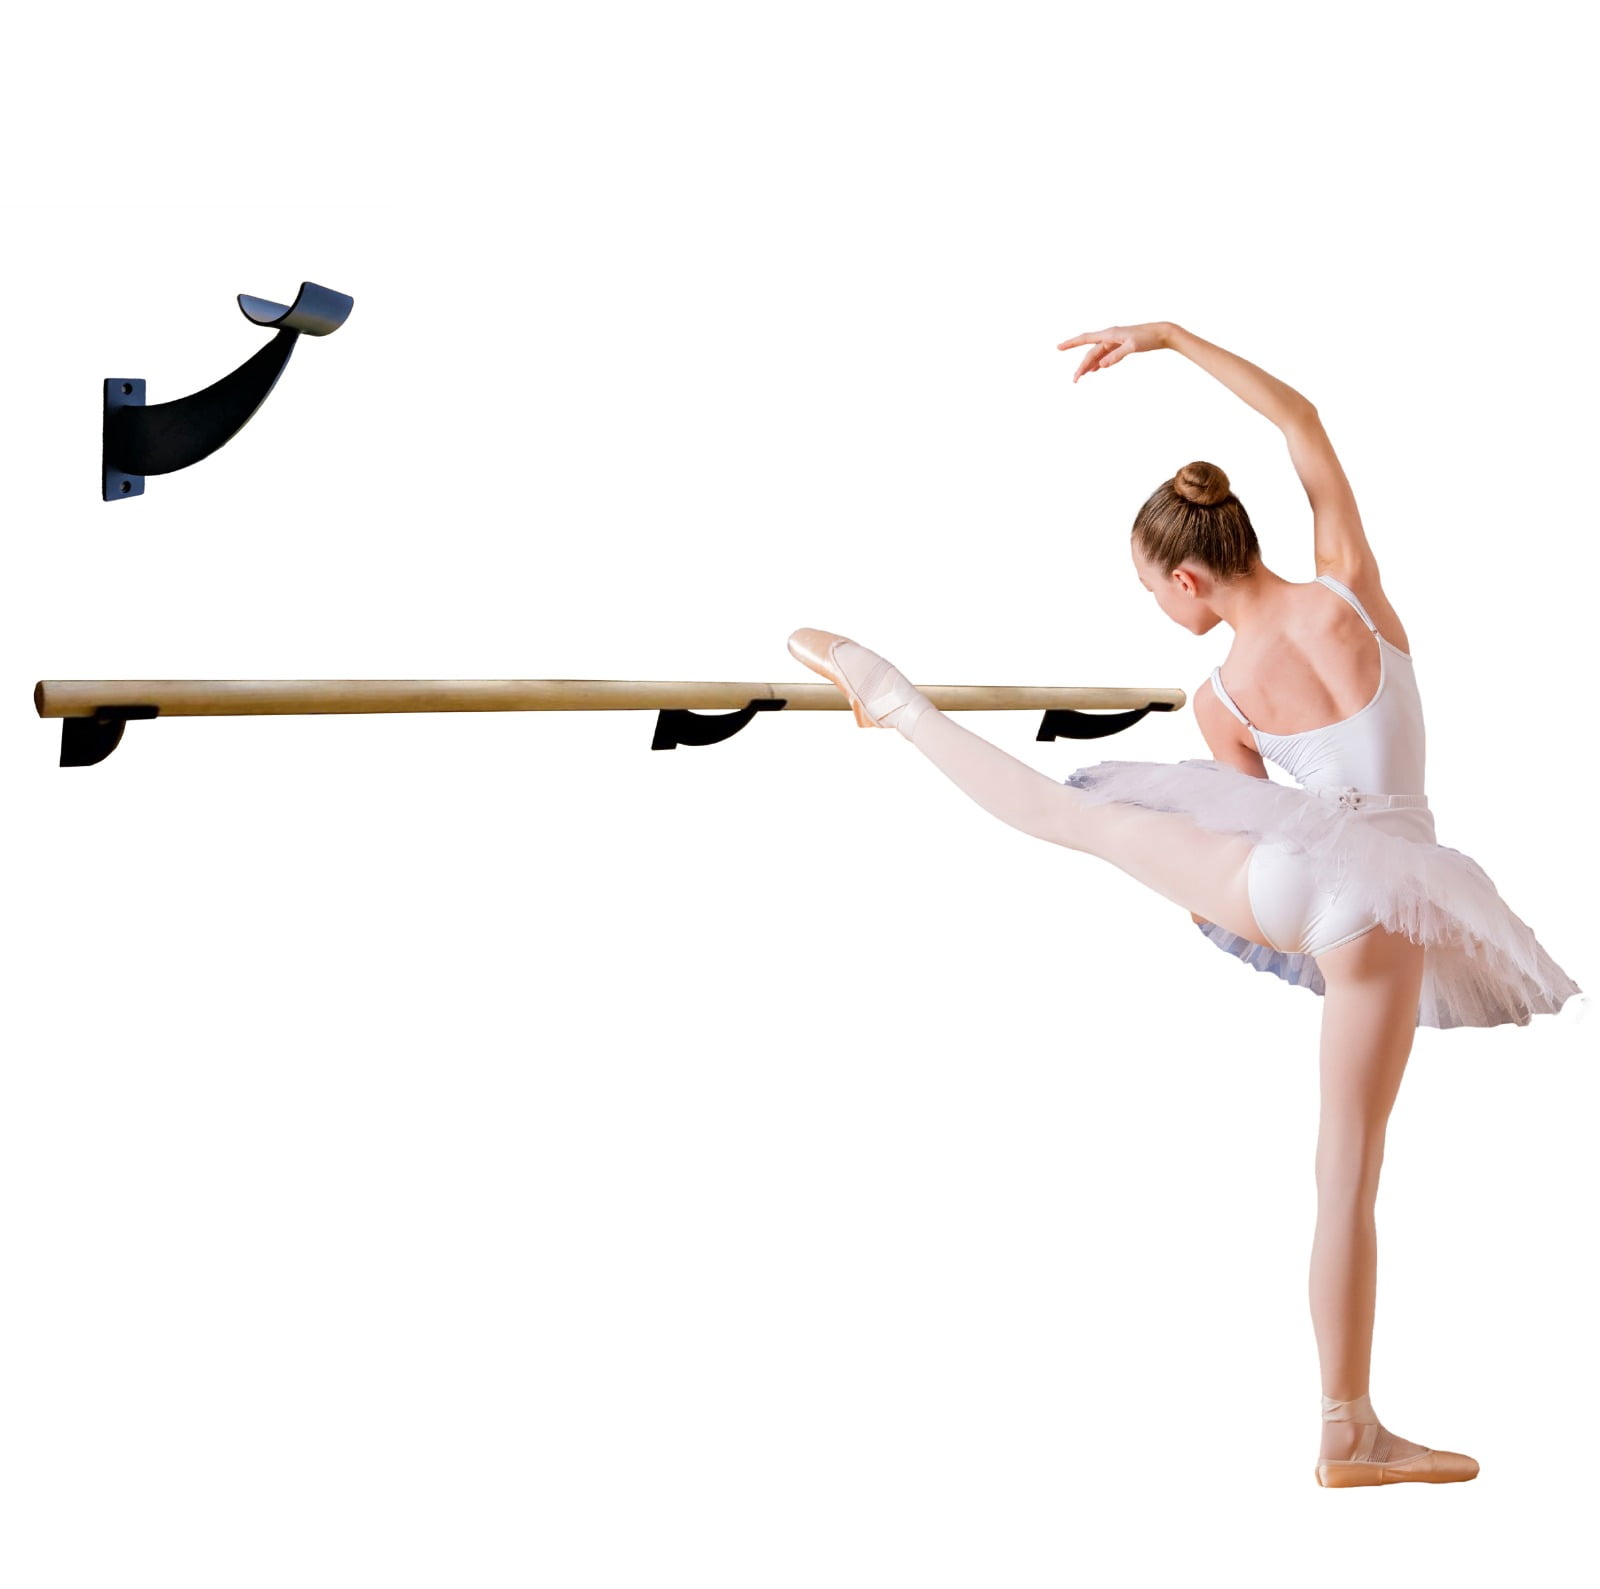  Ballet Barre Bar Adjustable Ballet Dance Bar Floor-standing  Ballet Stretch Barre Fitness Practise Ballet Bar for Home Barre Workouts or  Pointe Work Practice (Single Layer 1M) (Single Layer 1M) (Double 